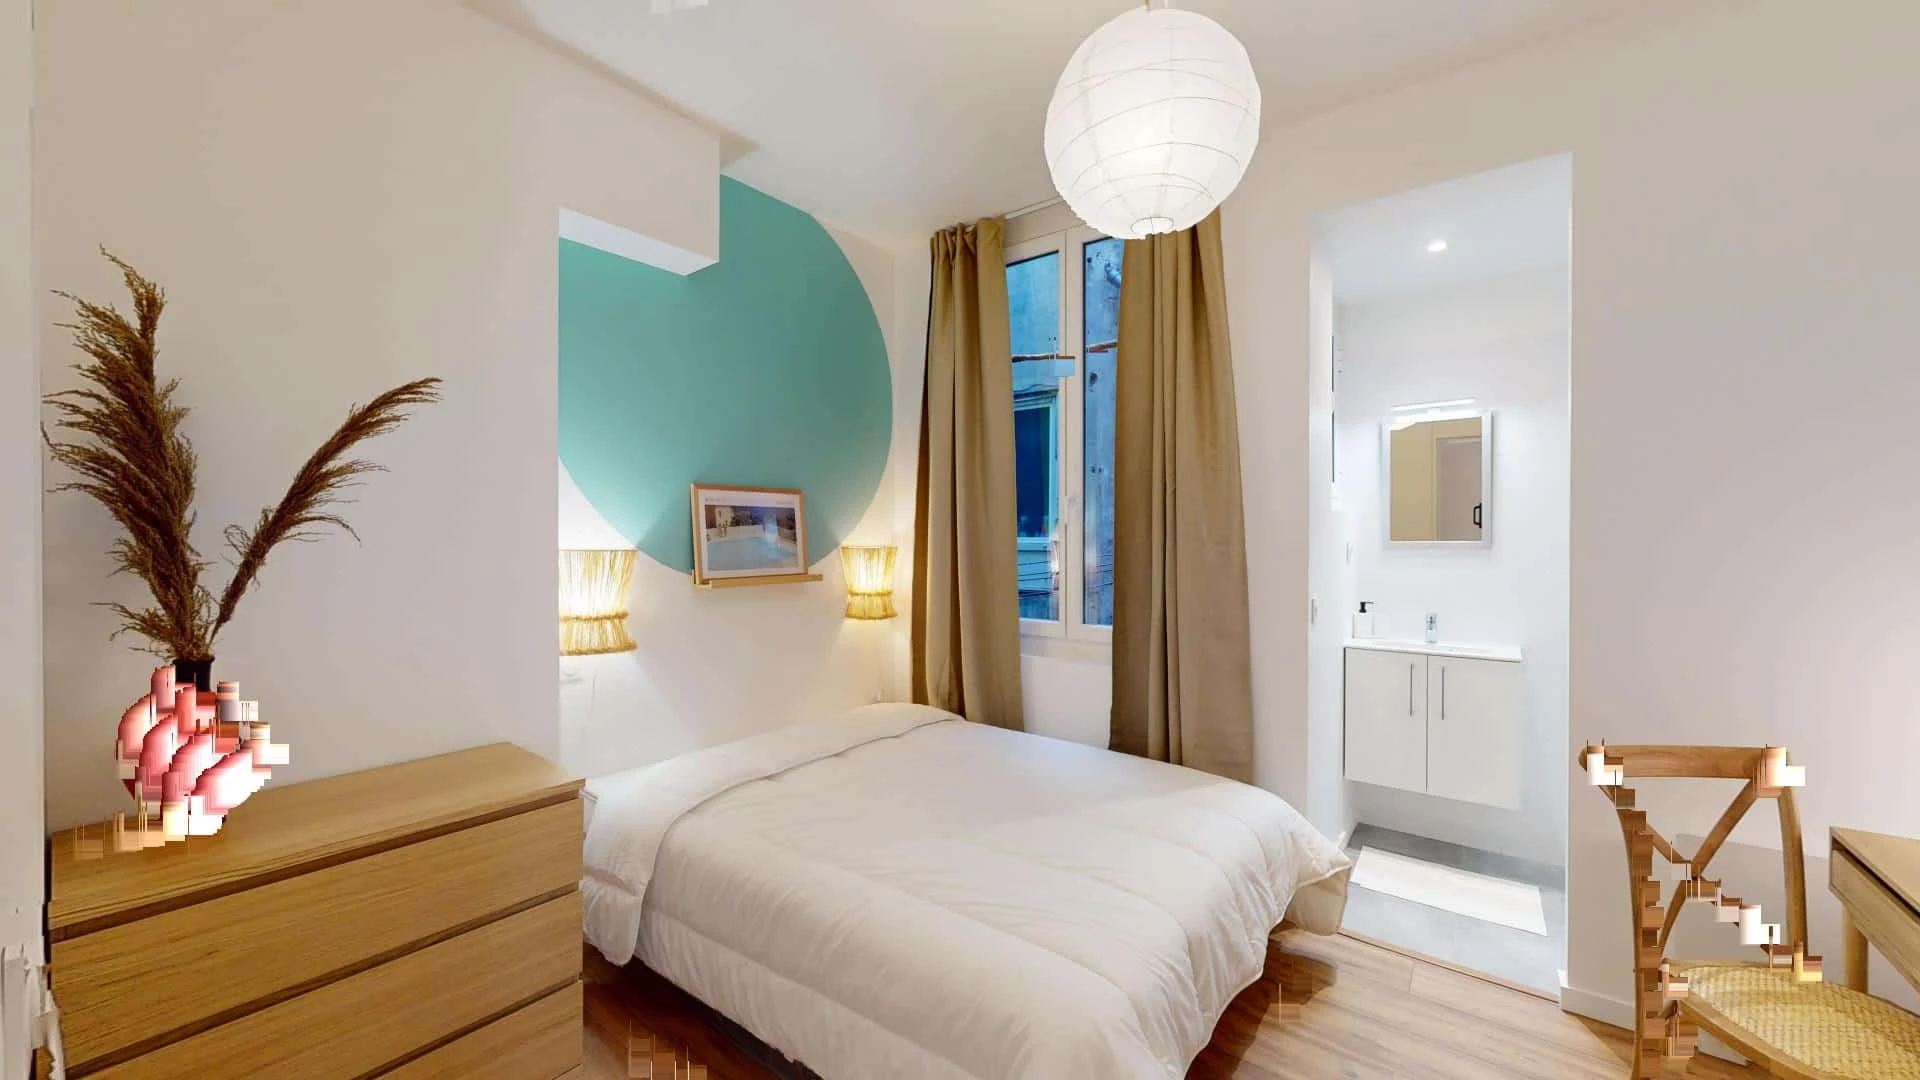 Quarto para alugar com cama de casal em Marselha